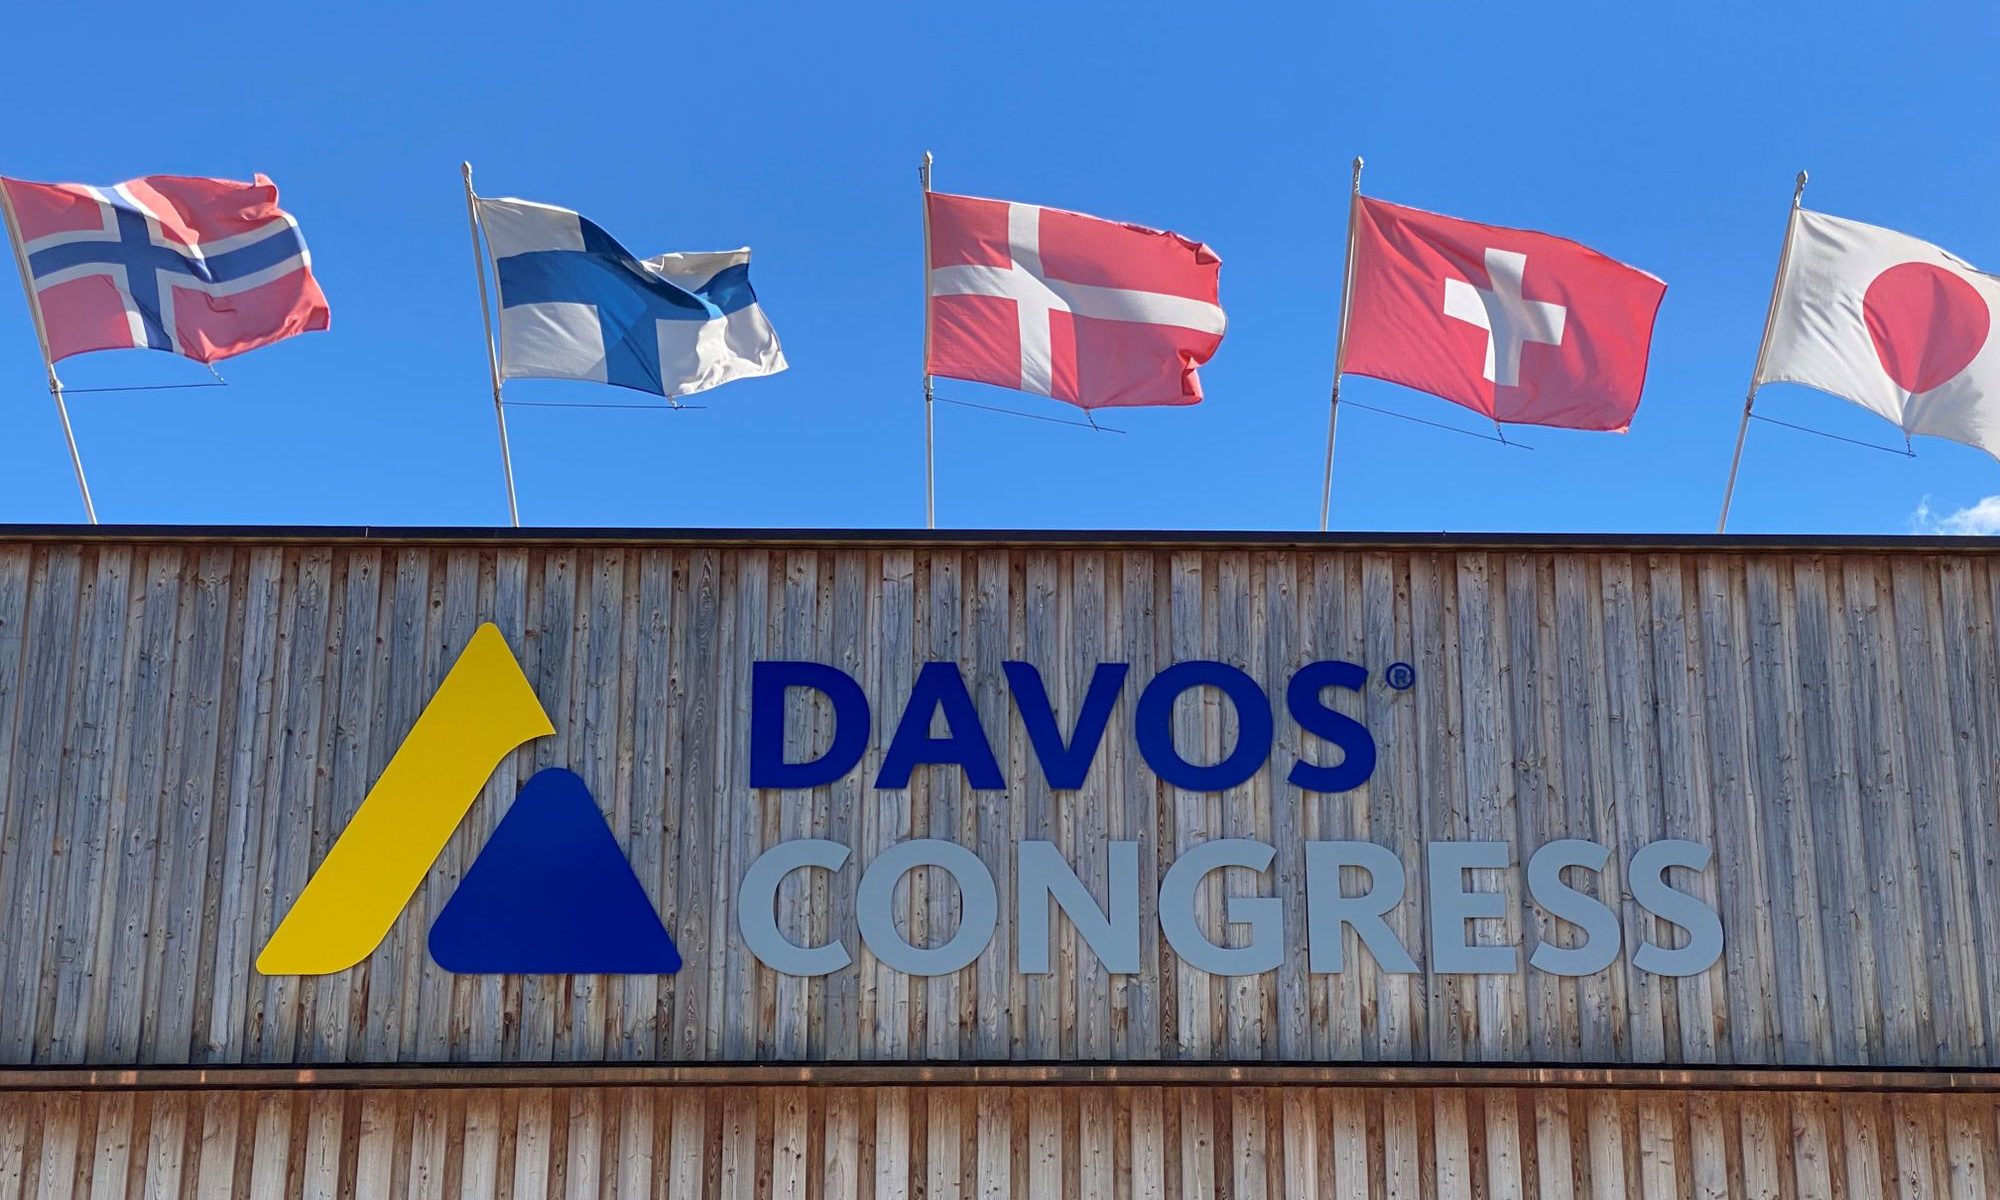 Davos Kongress